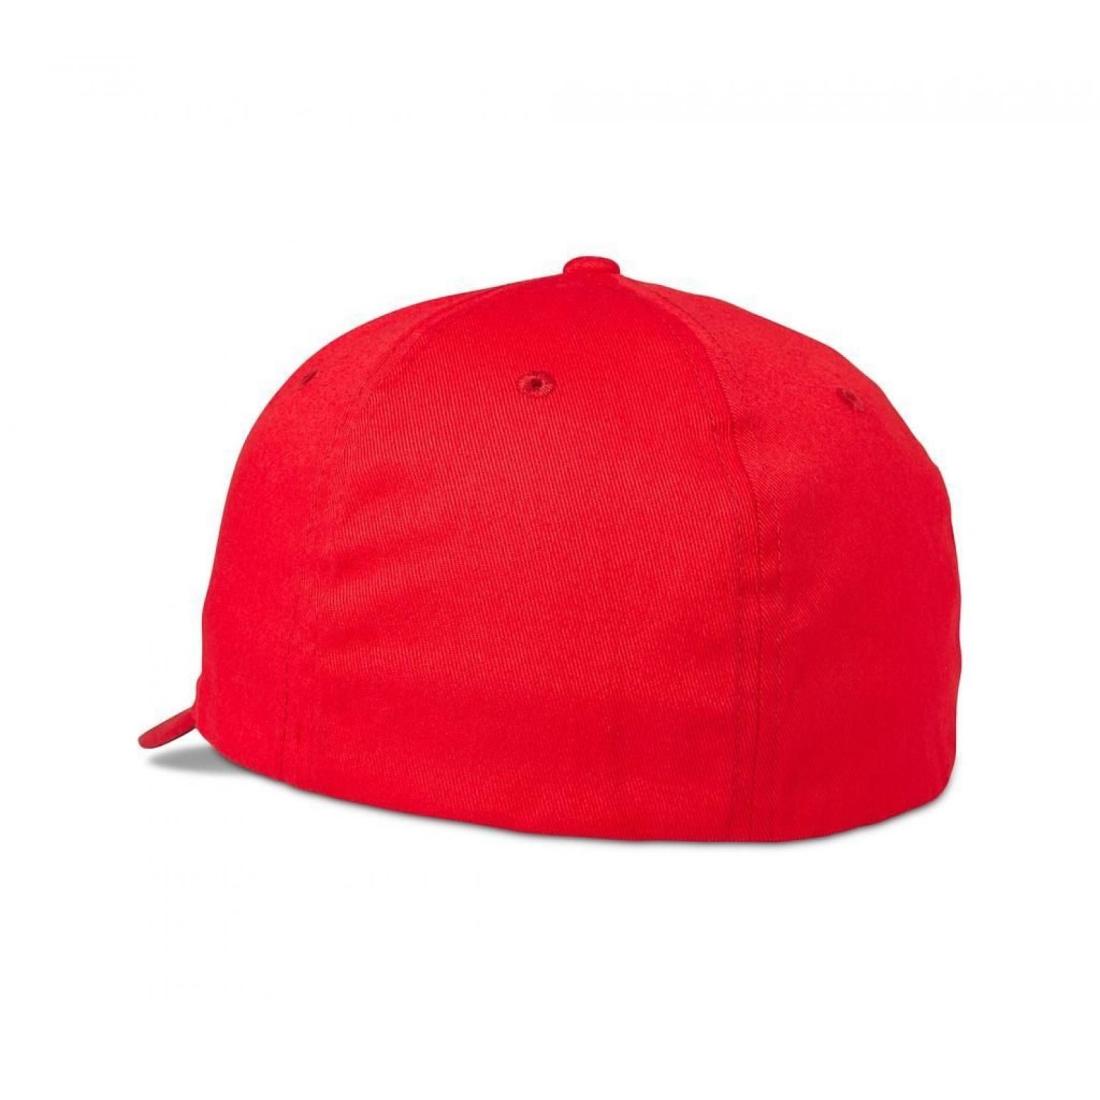 Epicycle Flexfit 2.0 Hat Red/Black